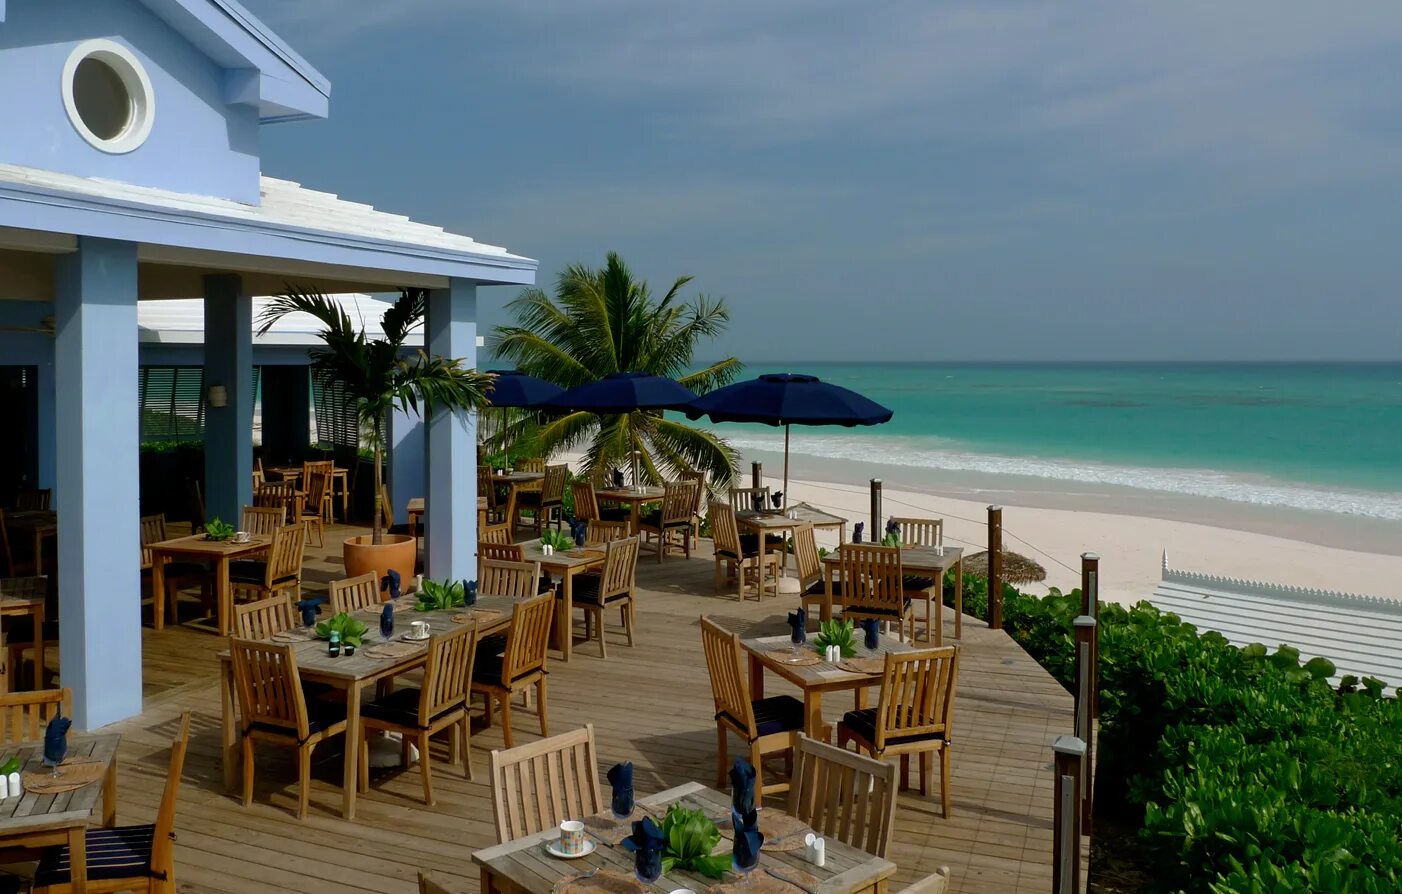 Харбор Айленд Багамы. Рестораны на Багамах. Квартира на Багамах. “Milk Sands Tournament” Marillia. Harbor island